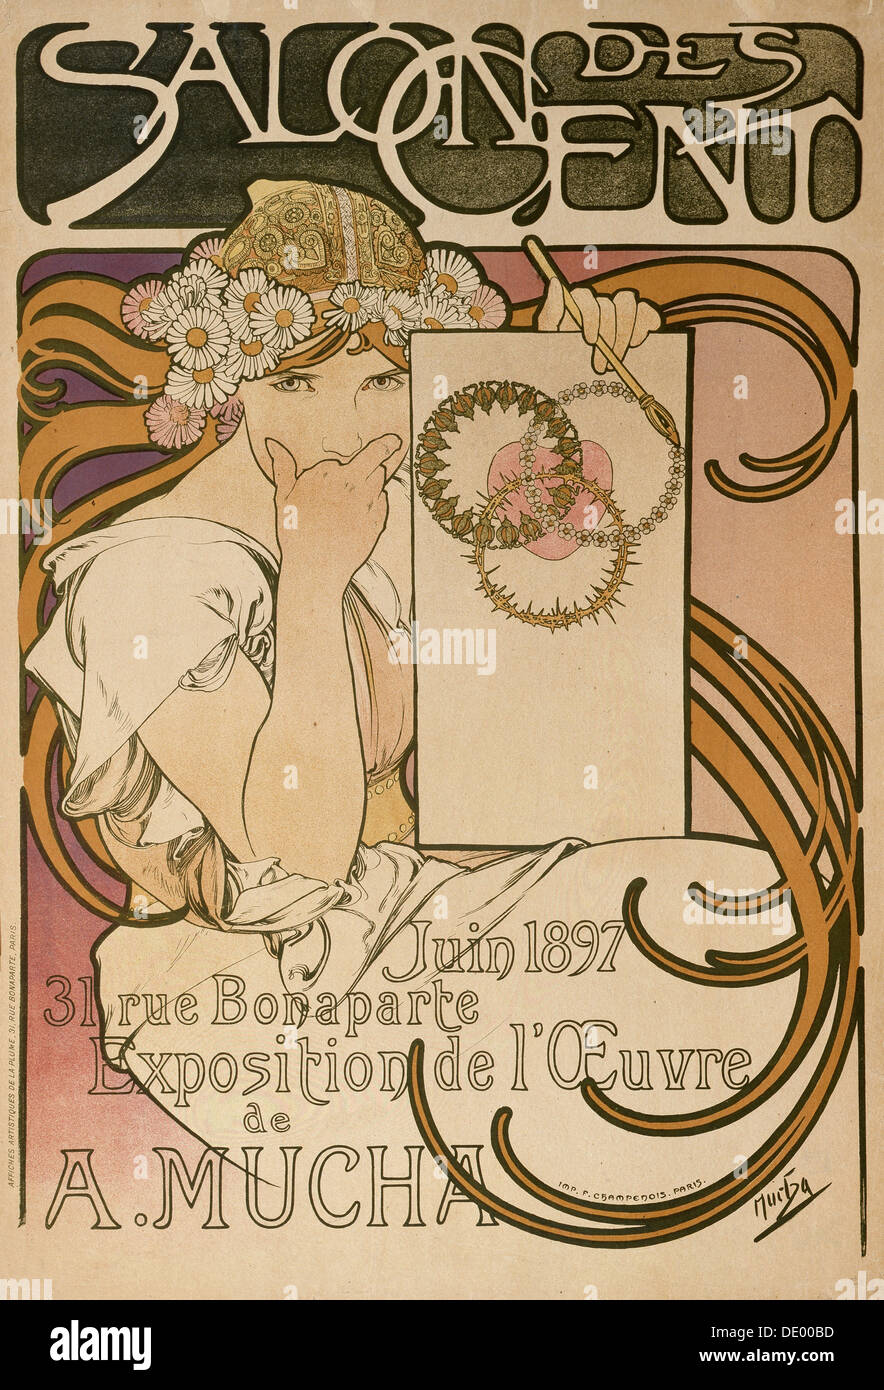 Affiche pour l'exposition Alphonse Mucha au Salon des Cent, Paris, France, 1897. Artiste : Alphonse Mucha Banque D'Images